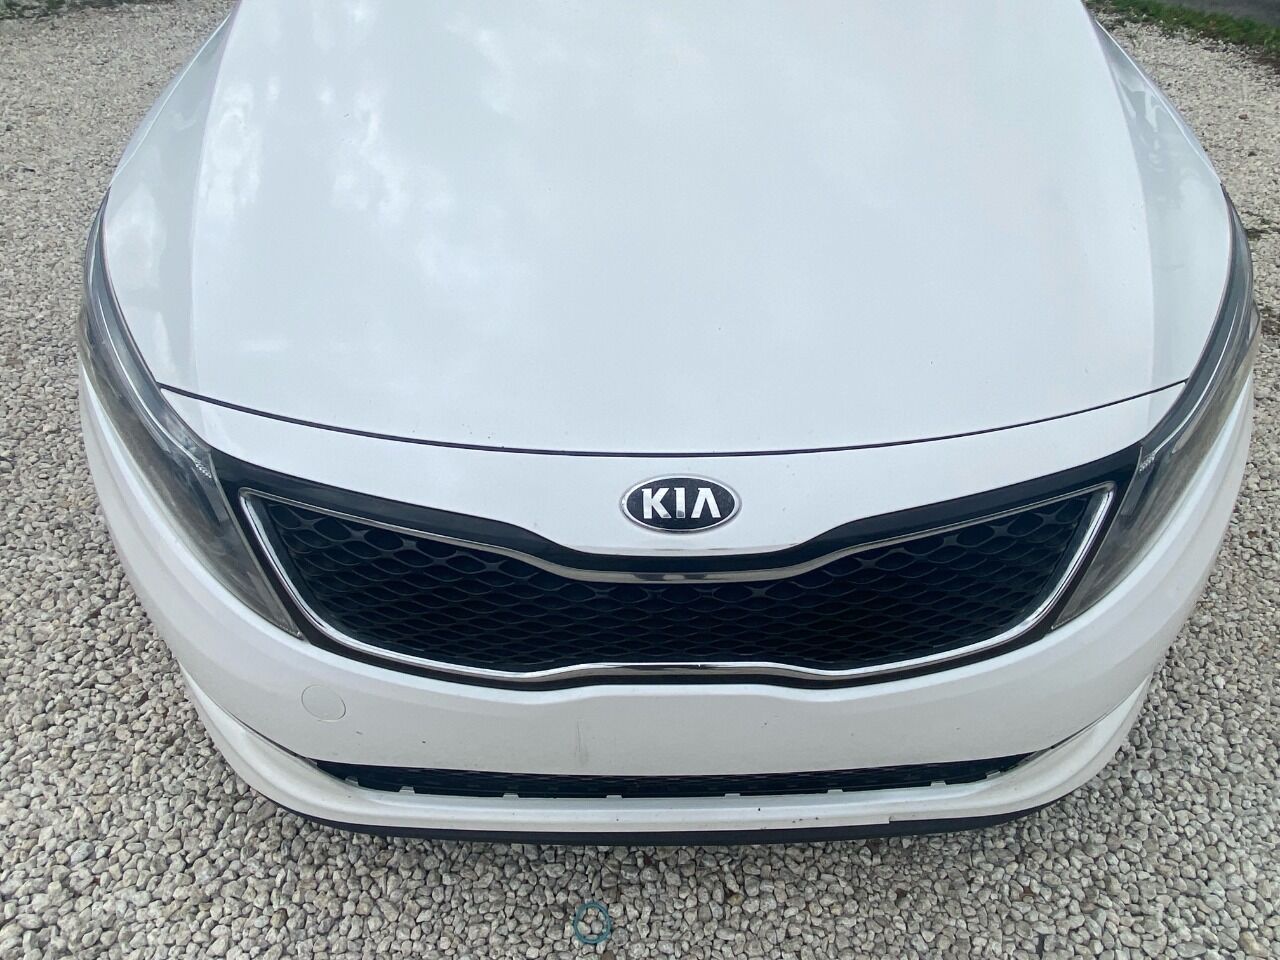 2014 KIA Optima Sedan - $5,895